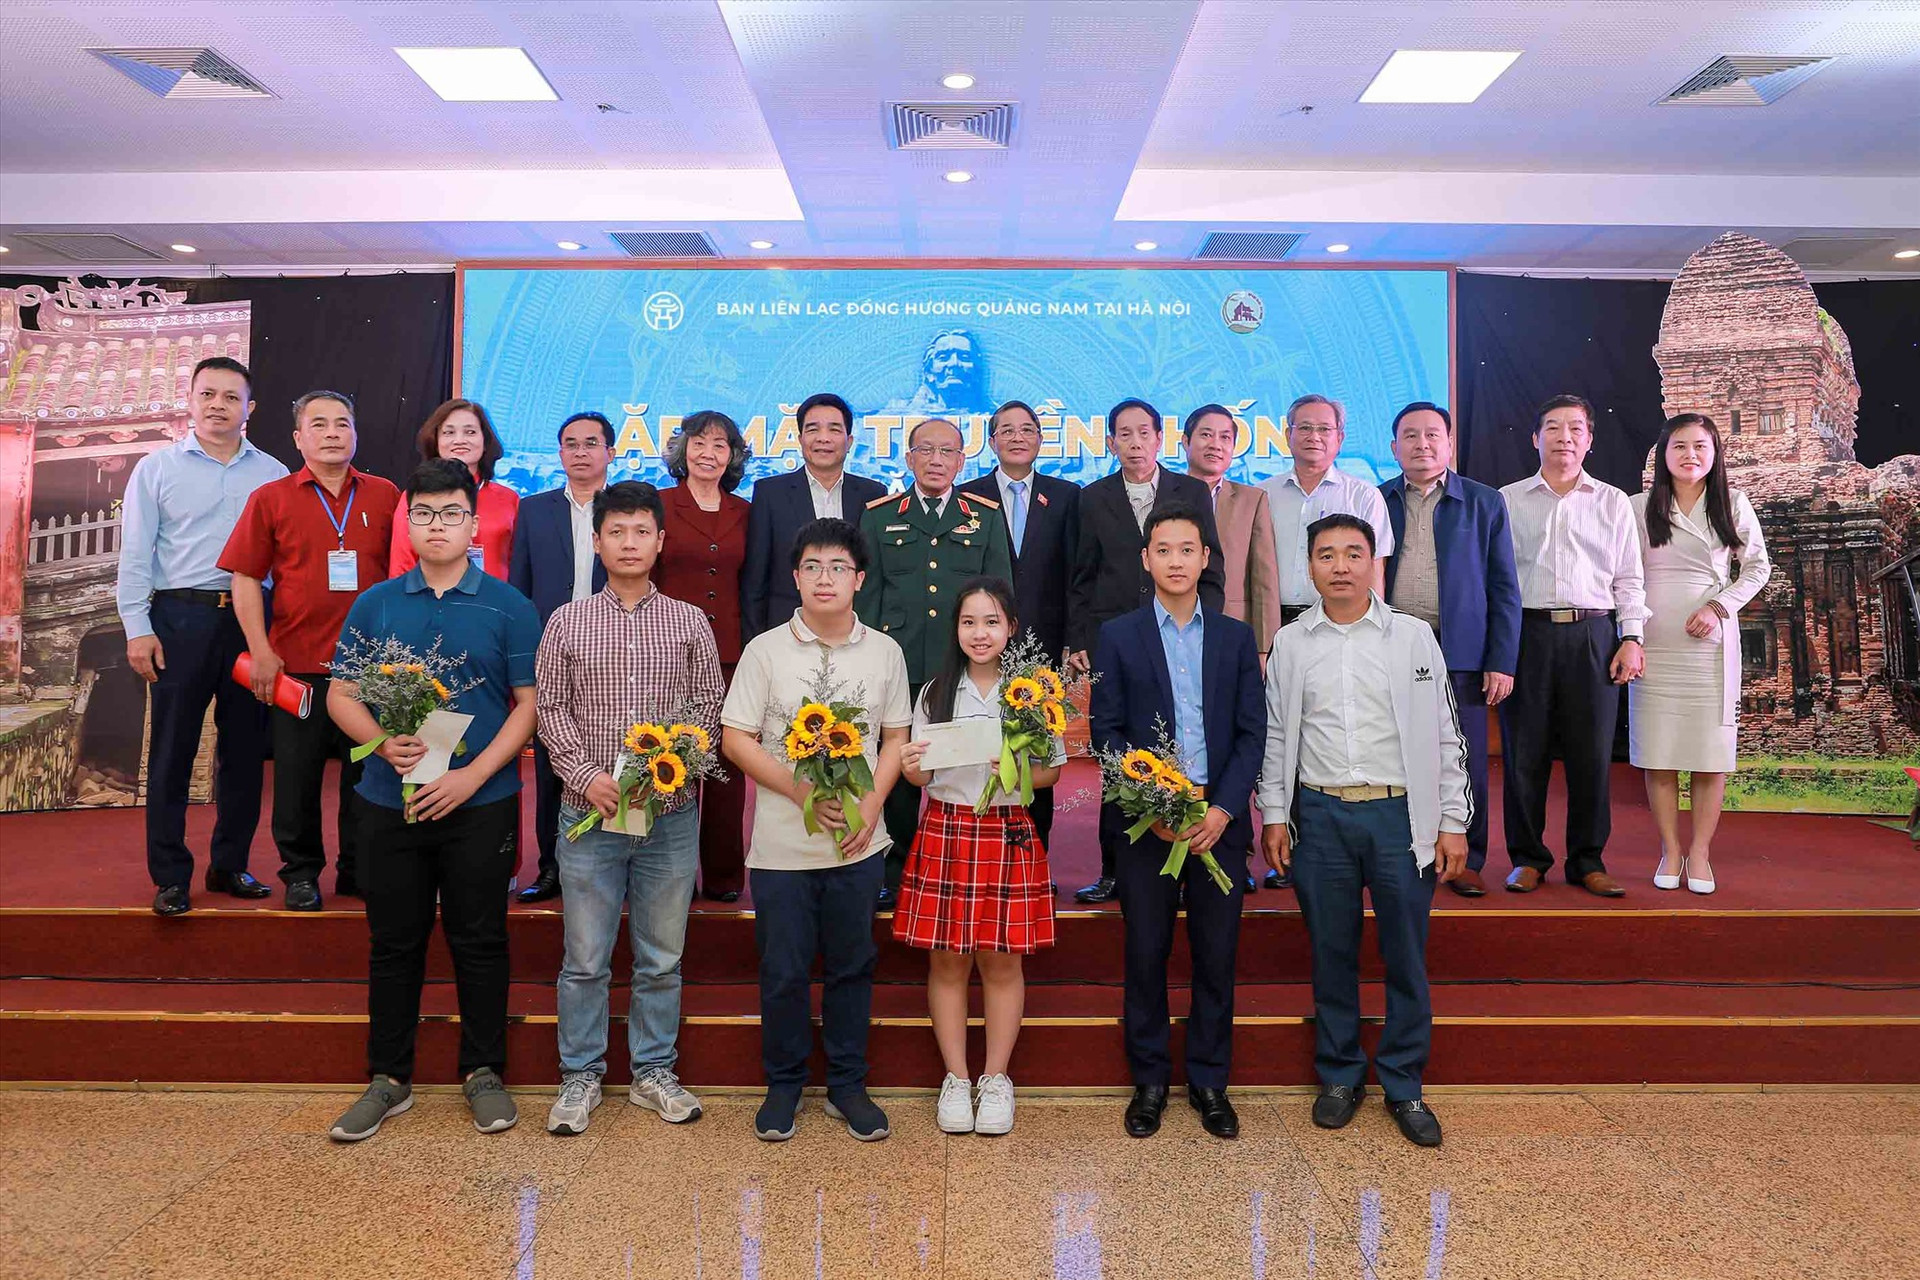 Đại diện Ban liên lạc đồng hương Quảng Nam tại Hà Nội và đại biểu tặng hoa và chụp ảnh lưu niệm với thế hệ con, cháu Quảng Nam tại Hà Nội đạt thành tích xuất sắc trong học tập và nghiên cứu